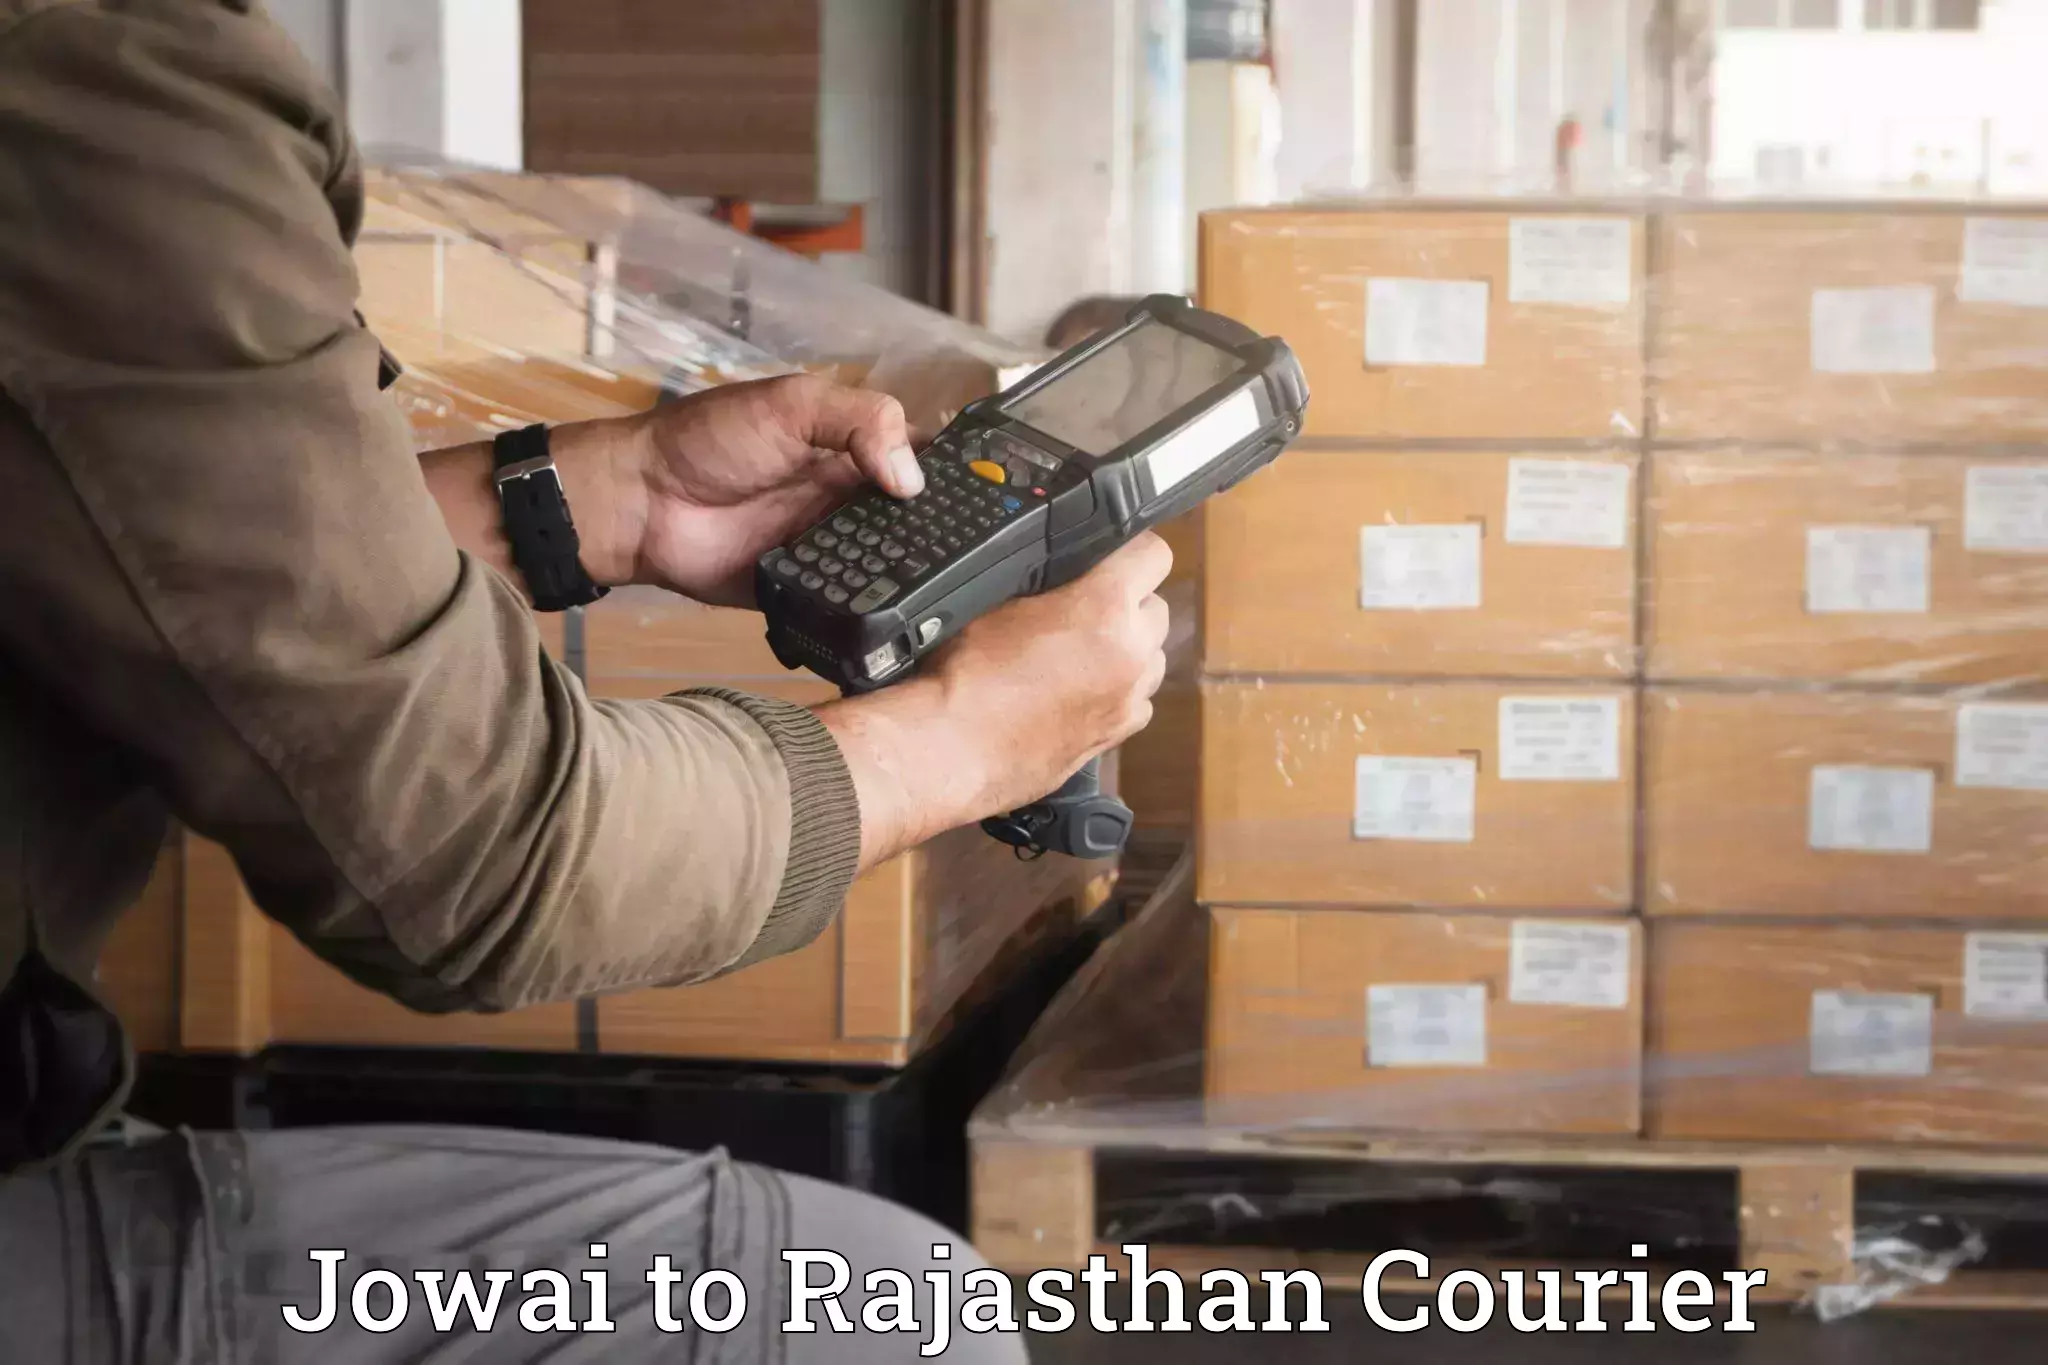 Furniture moving experts Jowai to Rajasthan